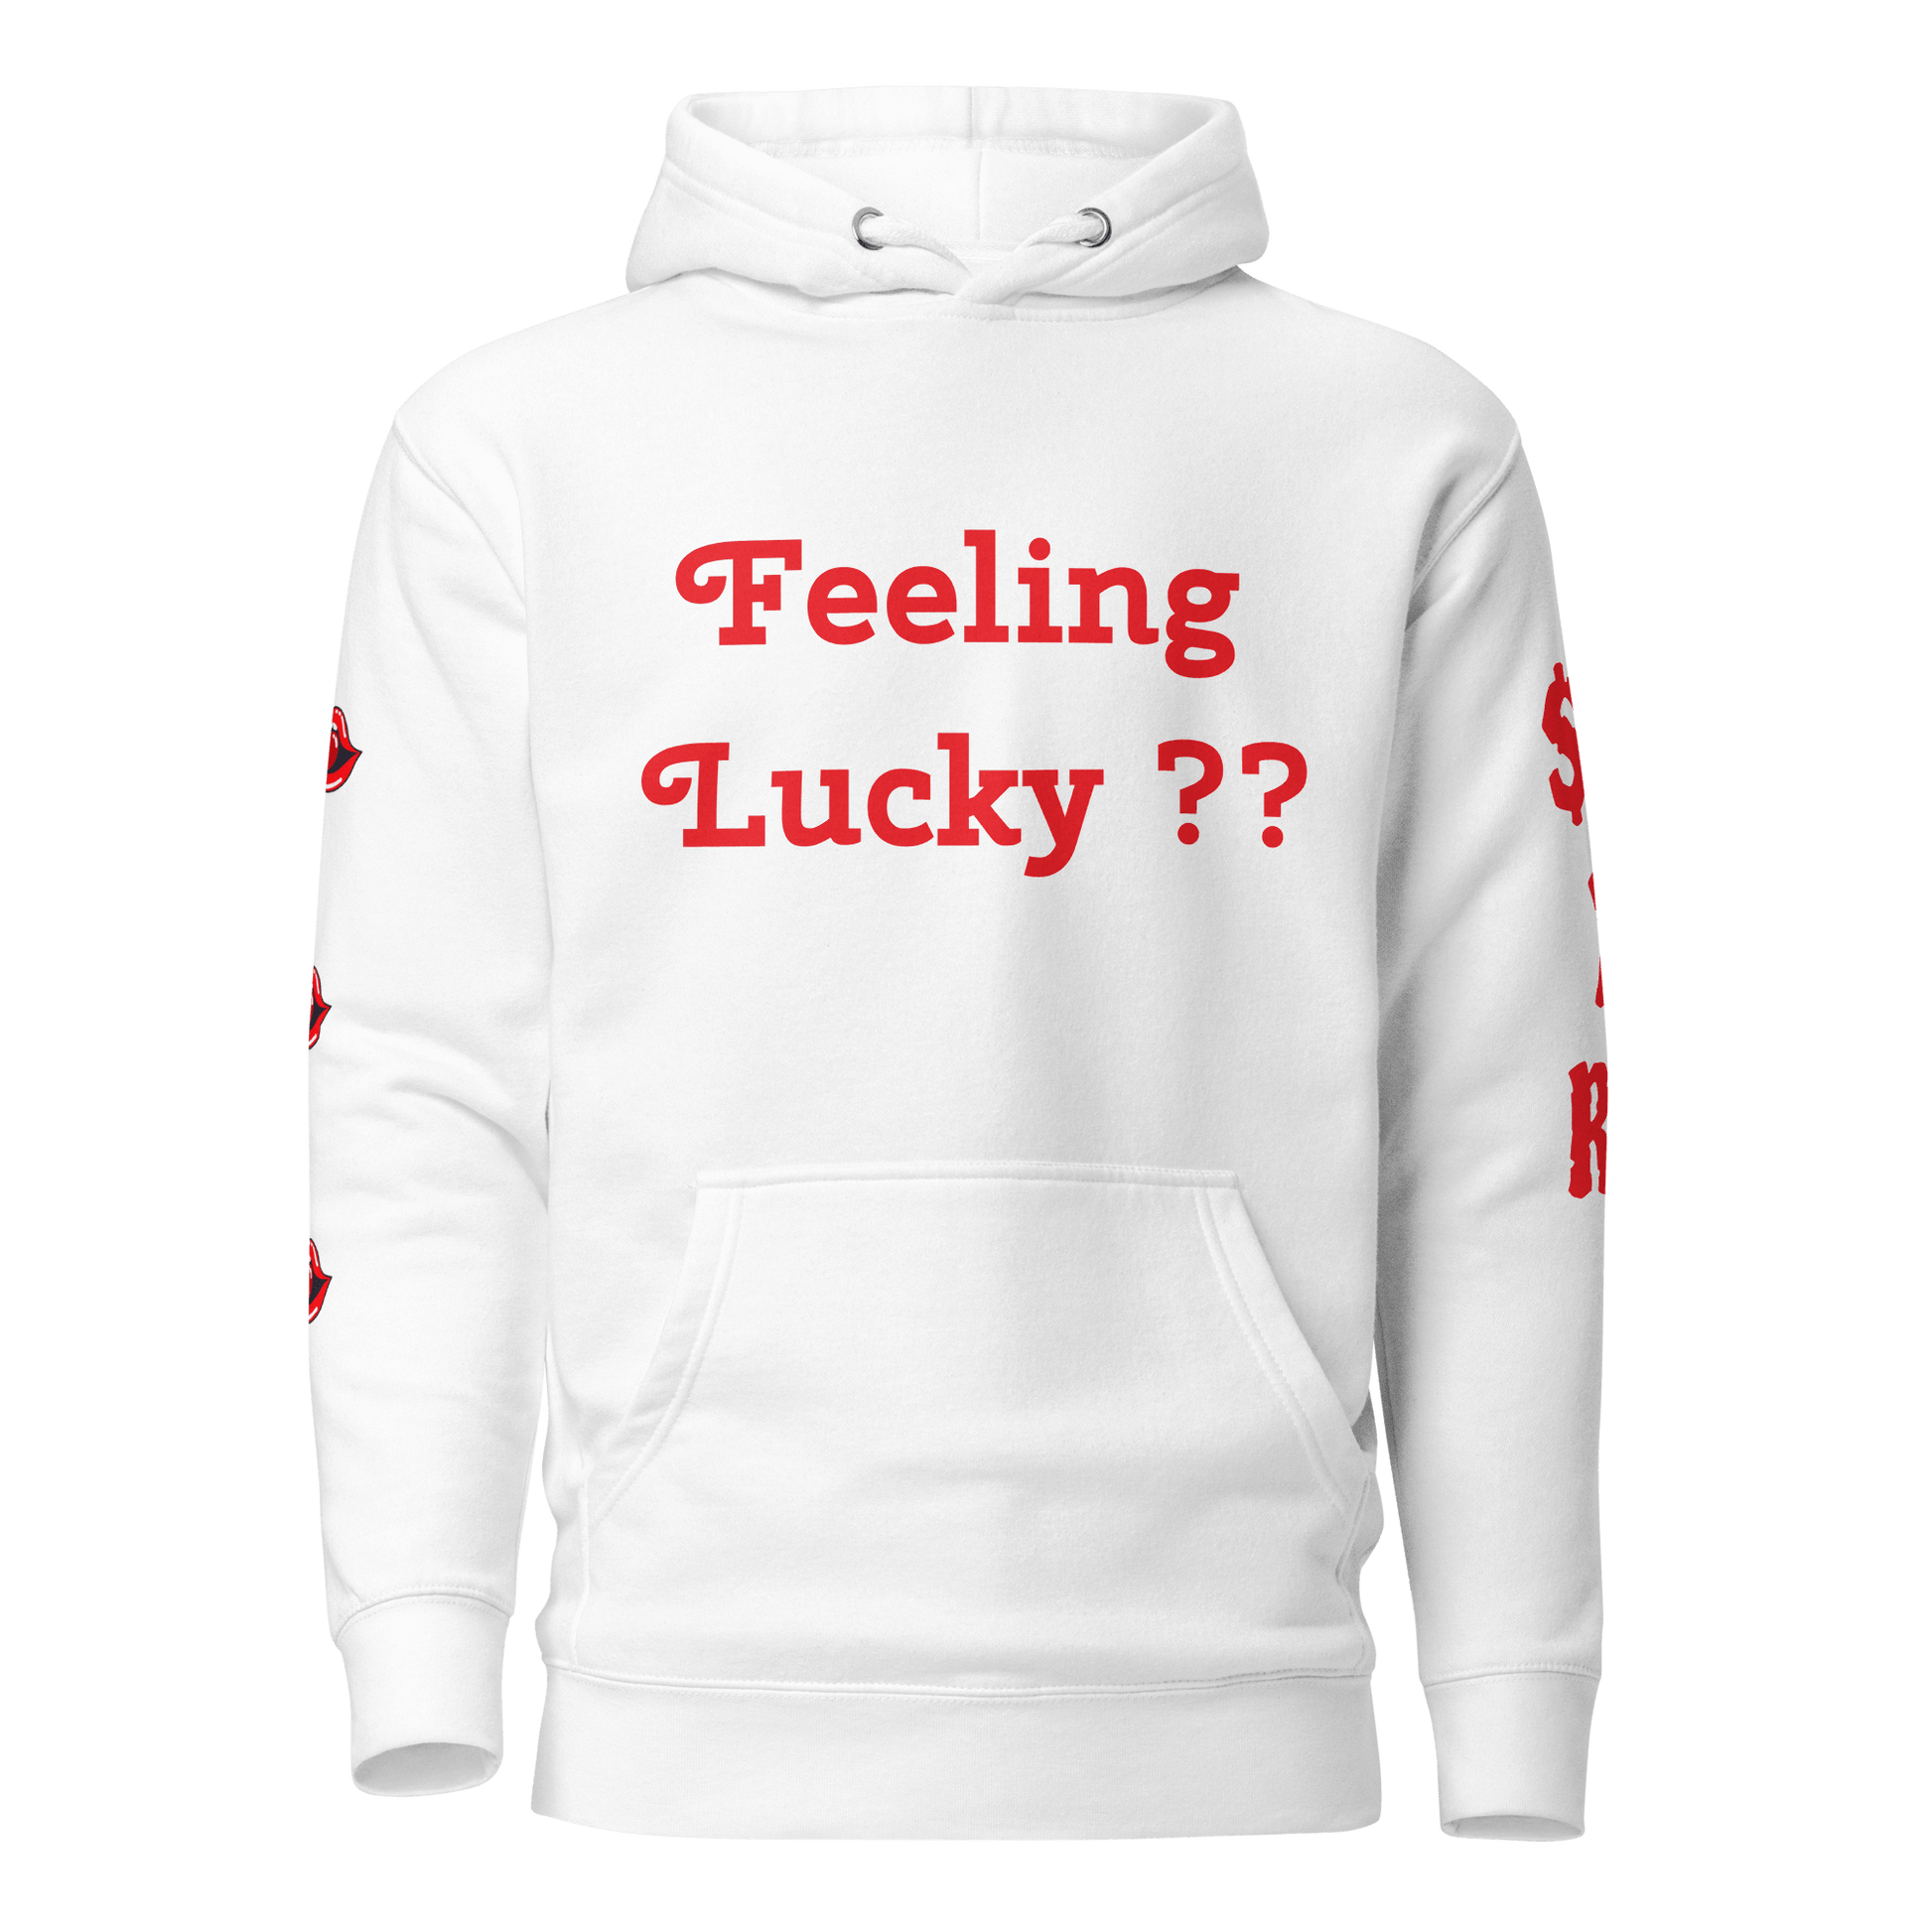 Feeling Lucky? - $ecure1